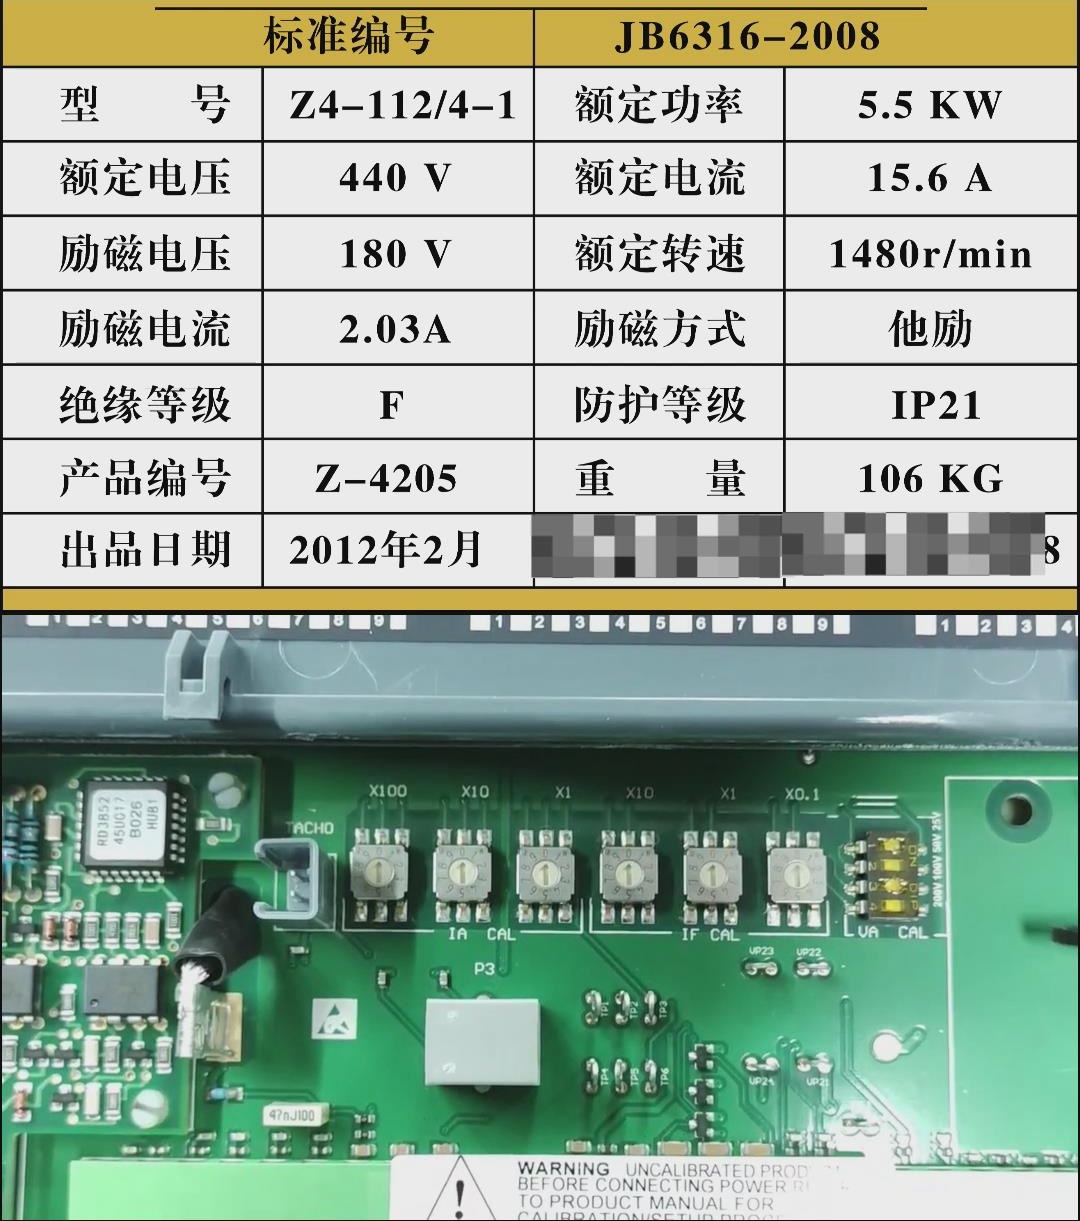 欧陆SSD590直流调速器如何根据电机铭牌设置参数？仁控机电操作视频分享推荐！